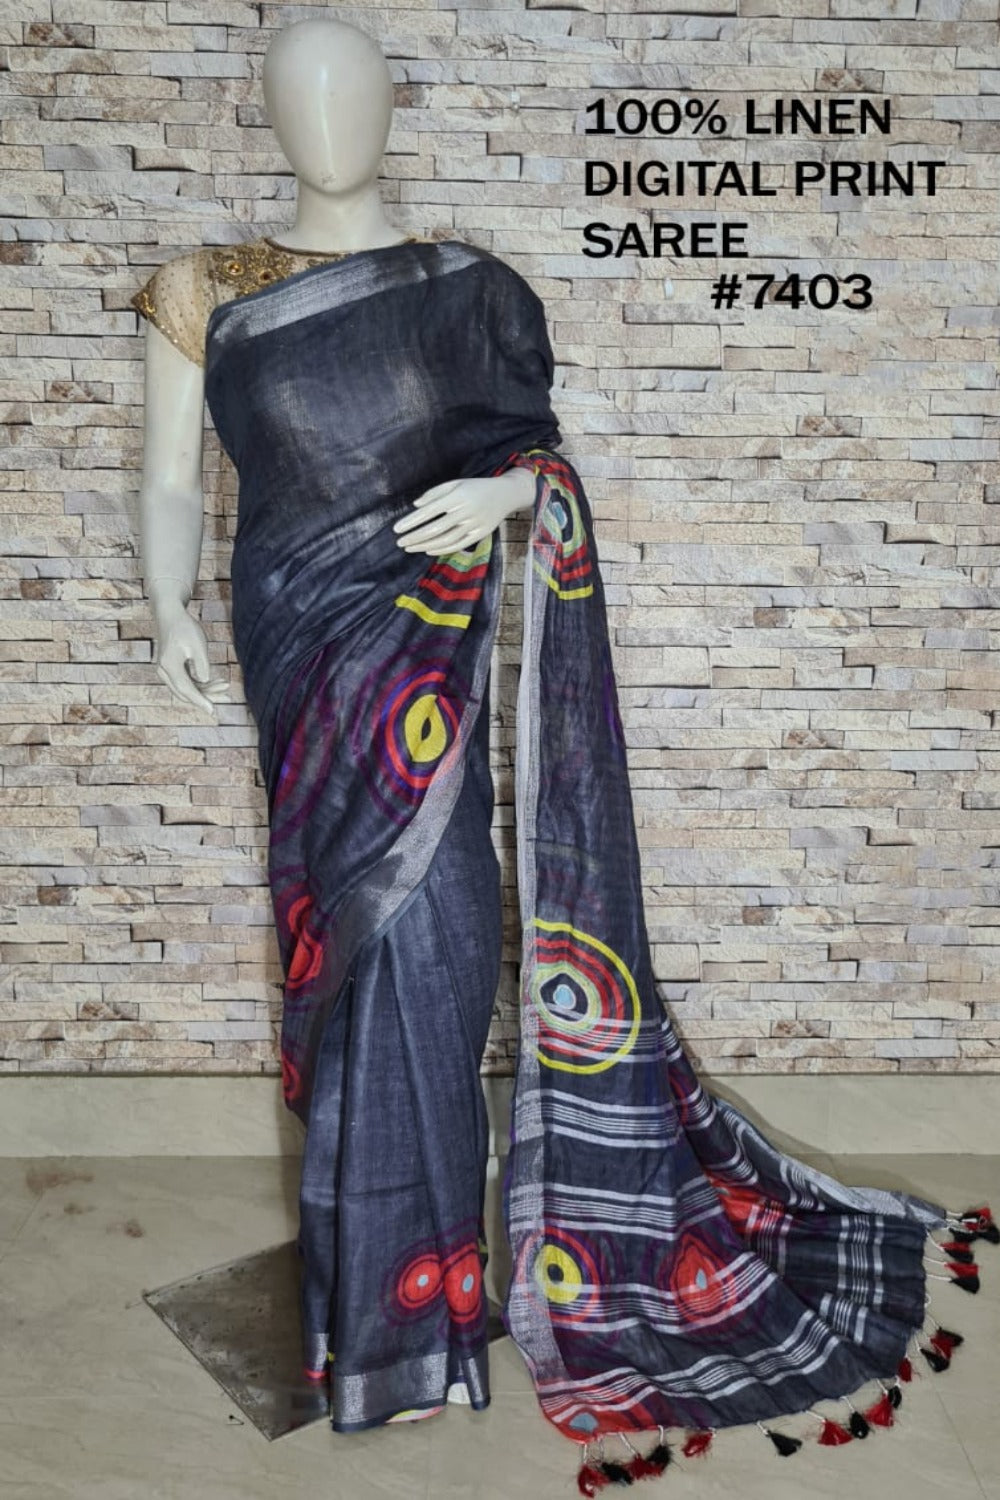 blackdigital printed handloom pure linen saree - linenworldonline.in